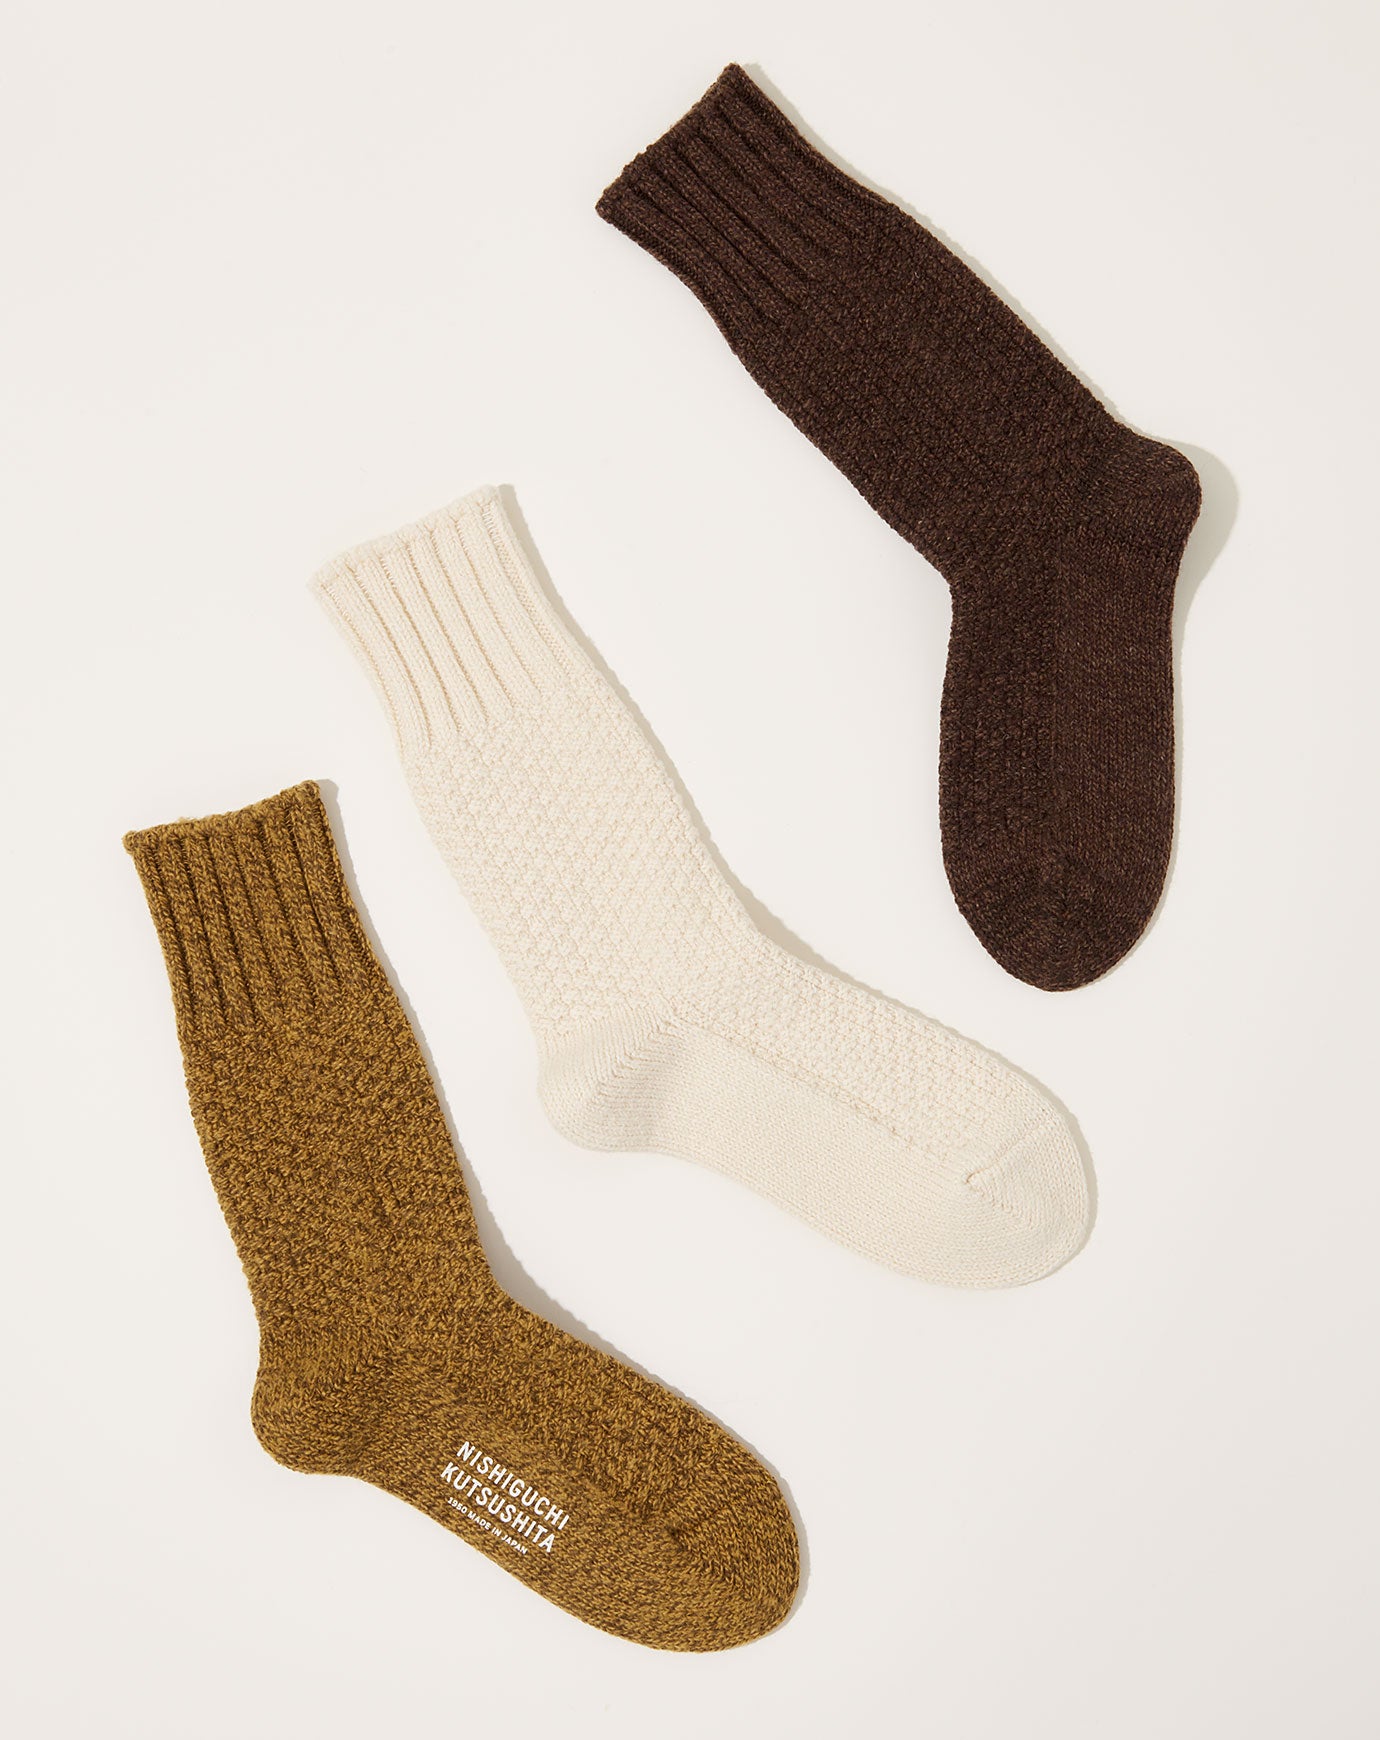 Nishiguchi Kutsushita Wool Cotton Boot Socks in Mocha Brown